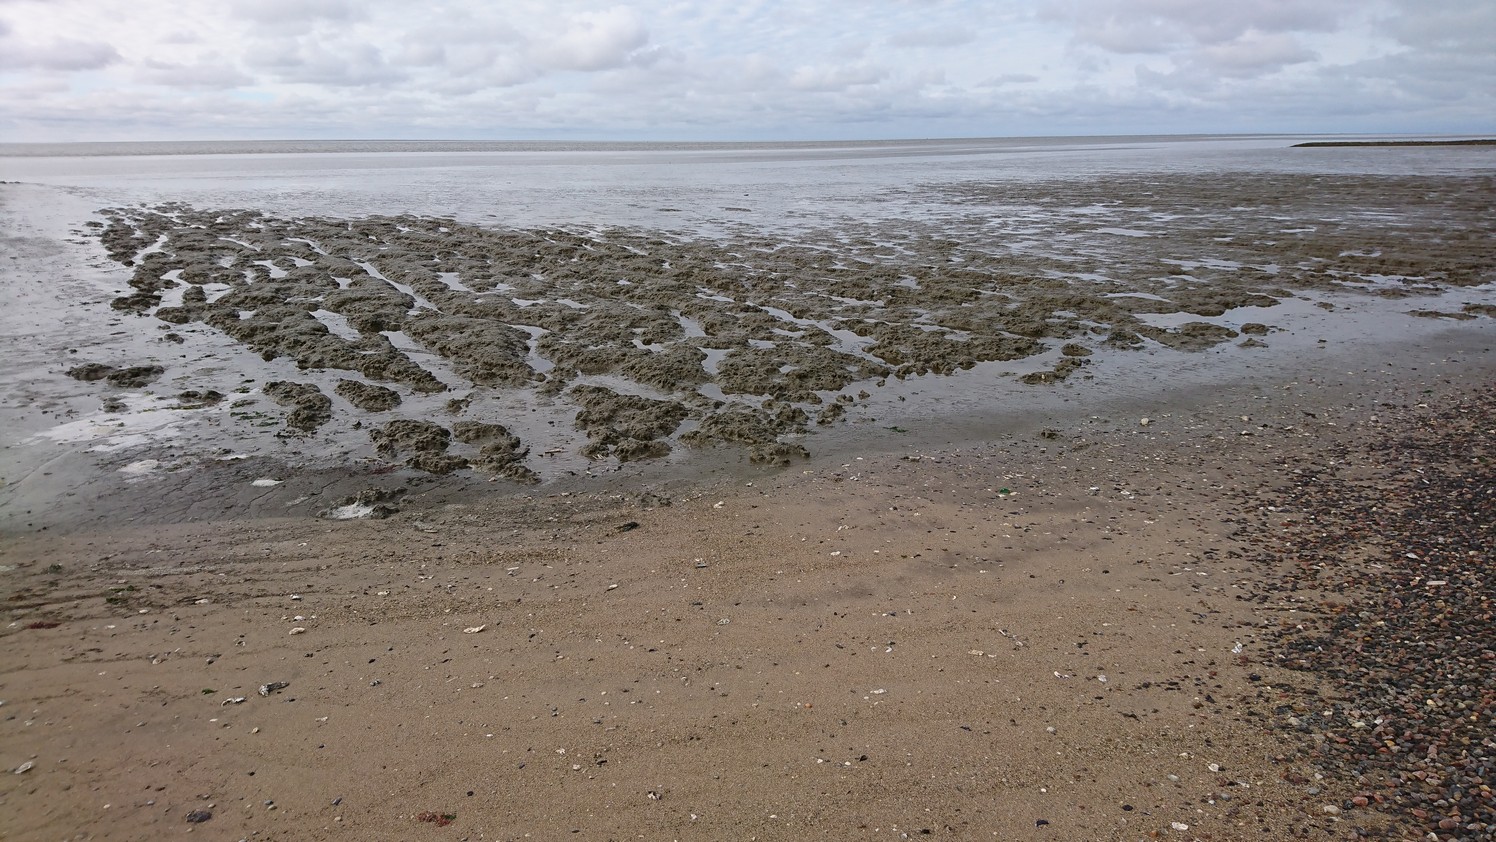 Slikstrandje in de Waddenzee, geschikt voor modderbaden